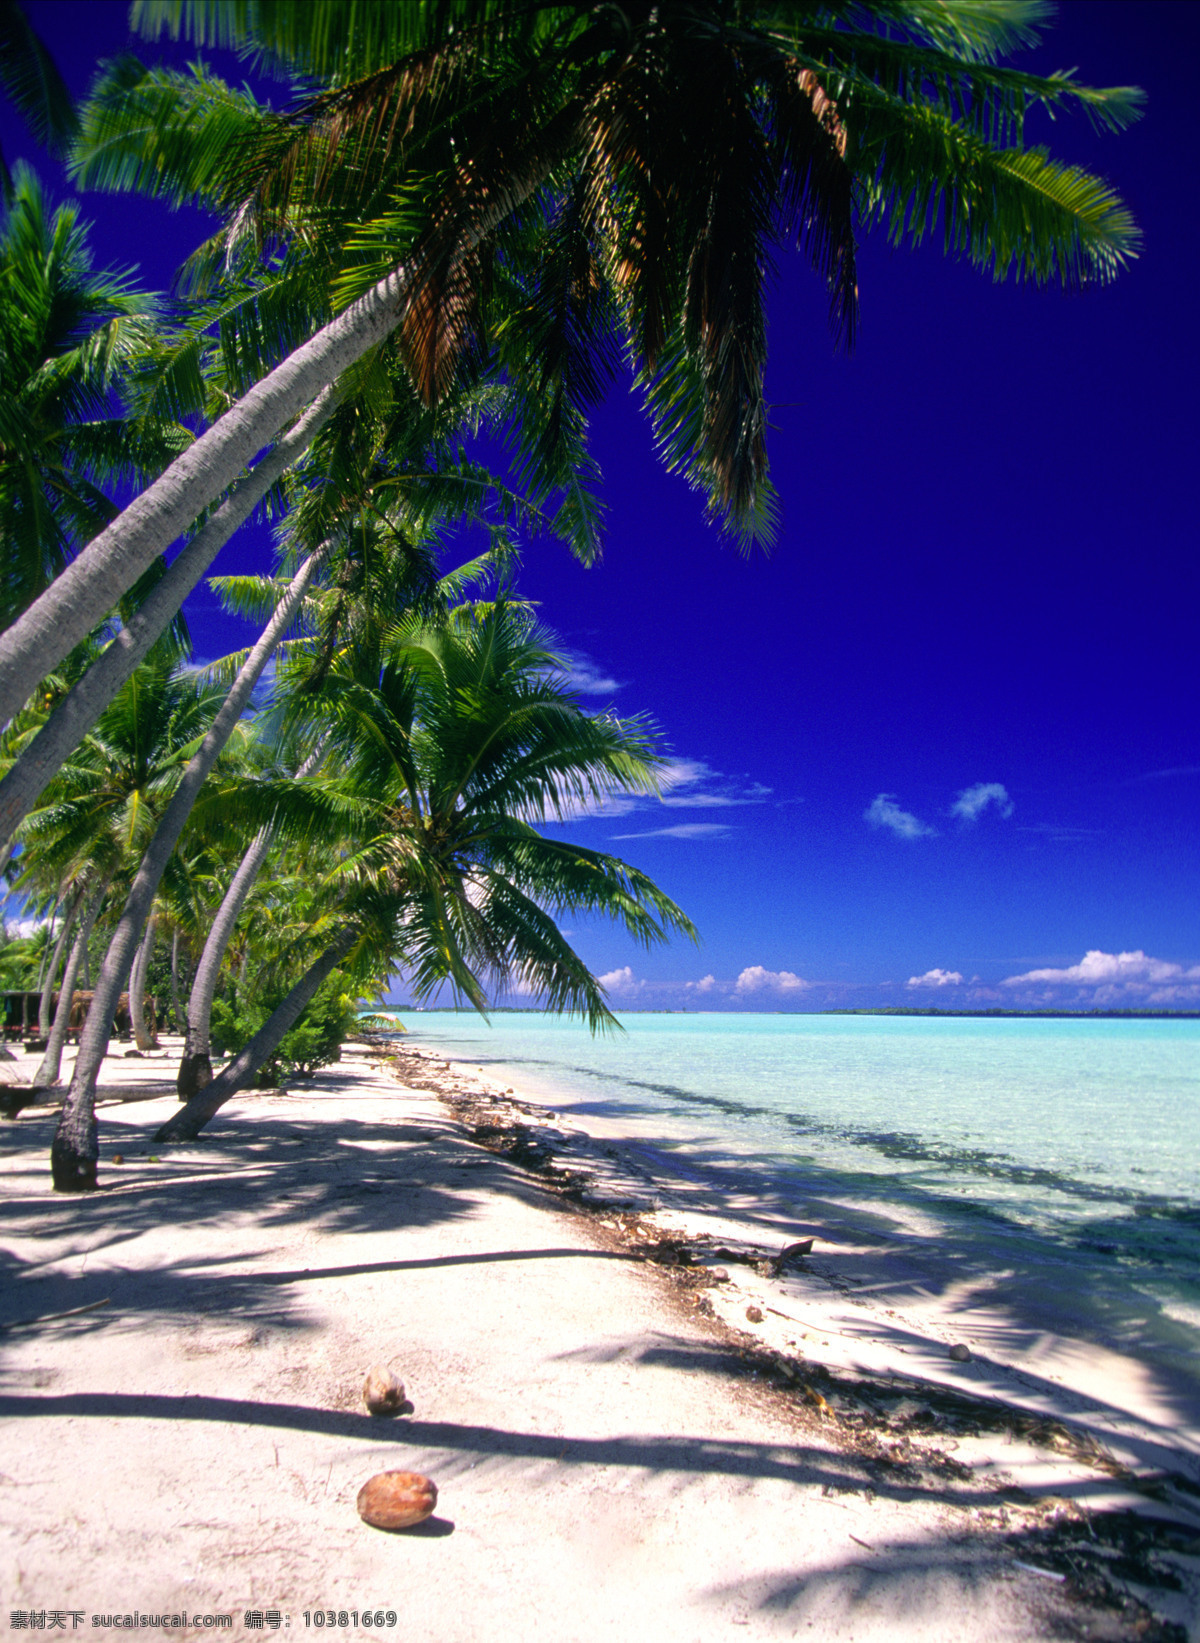 太平洋 海边 风景 美丽海滩 海边风景 沙滩 海滩 海平面 大海 海洋 椰子 椰树 海景 景色 美景 摄影图 高清图片 海洋海边 自然景观 黑色